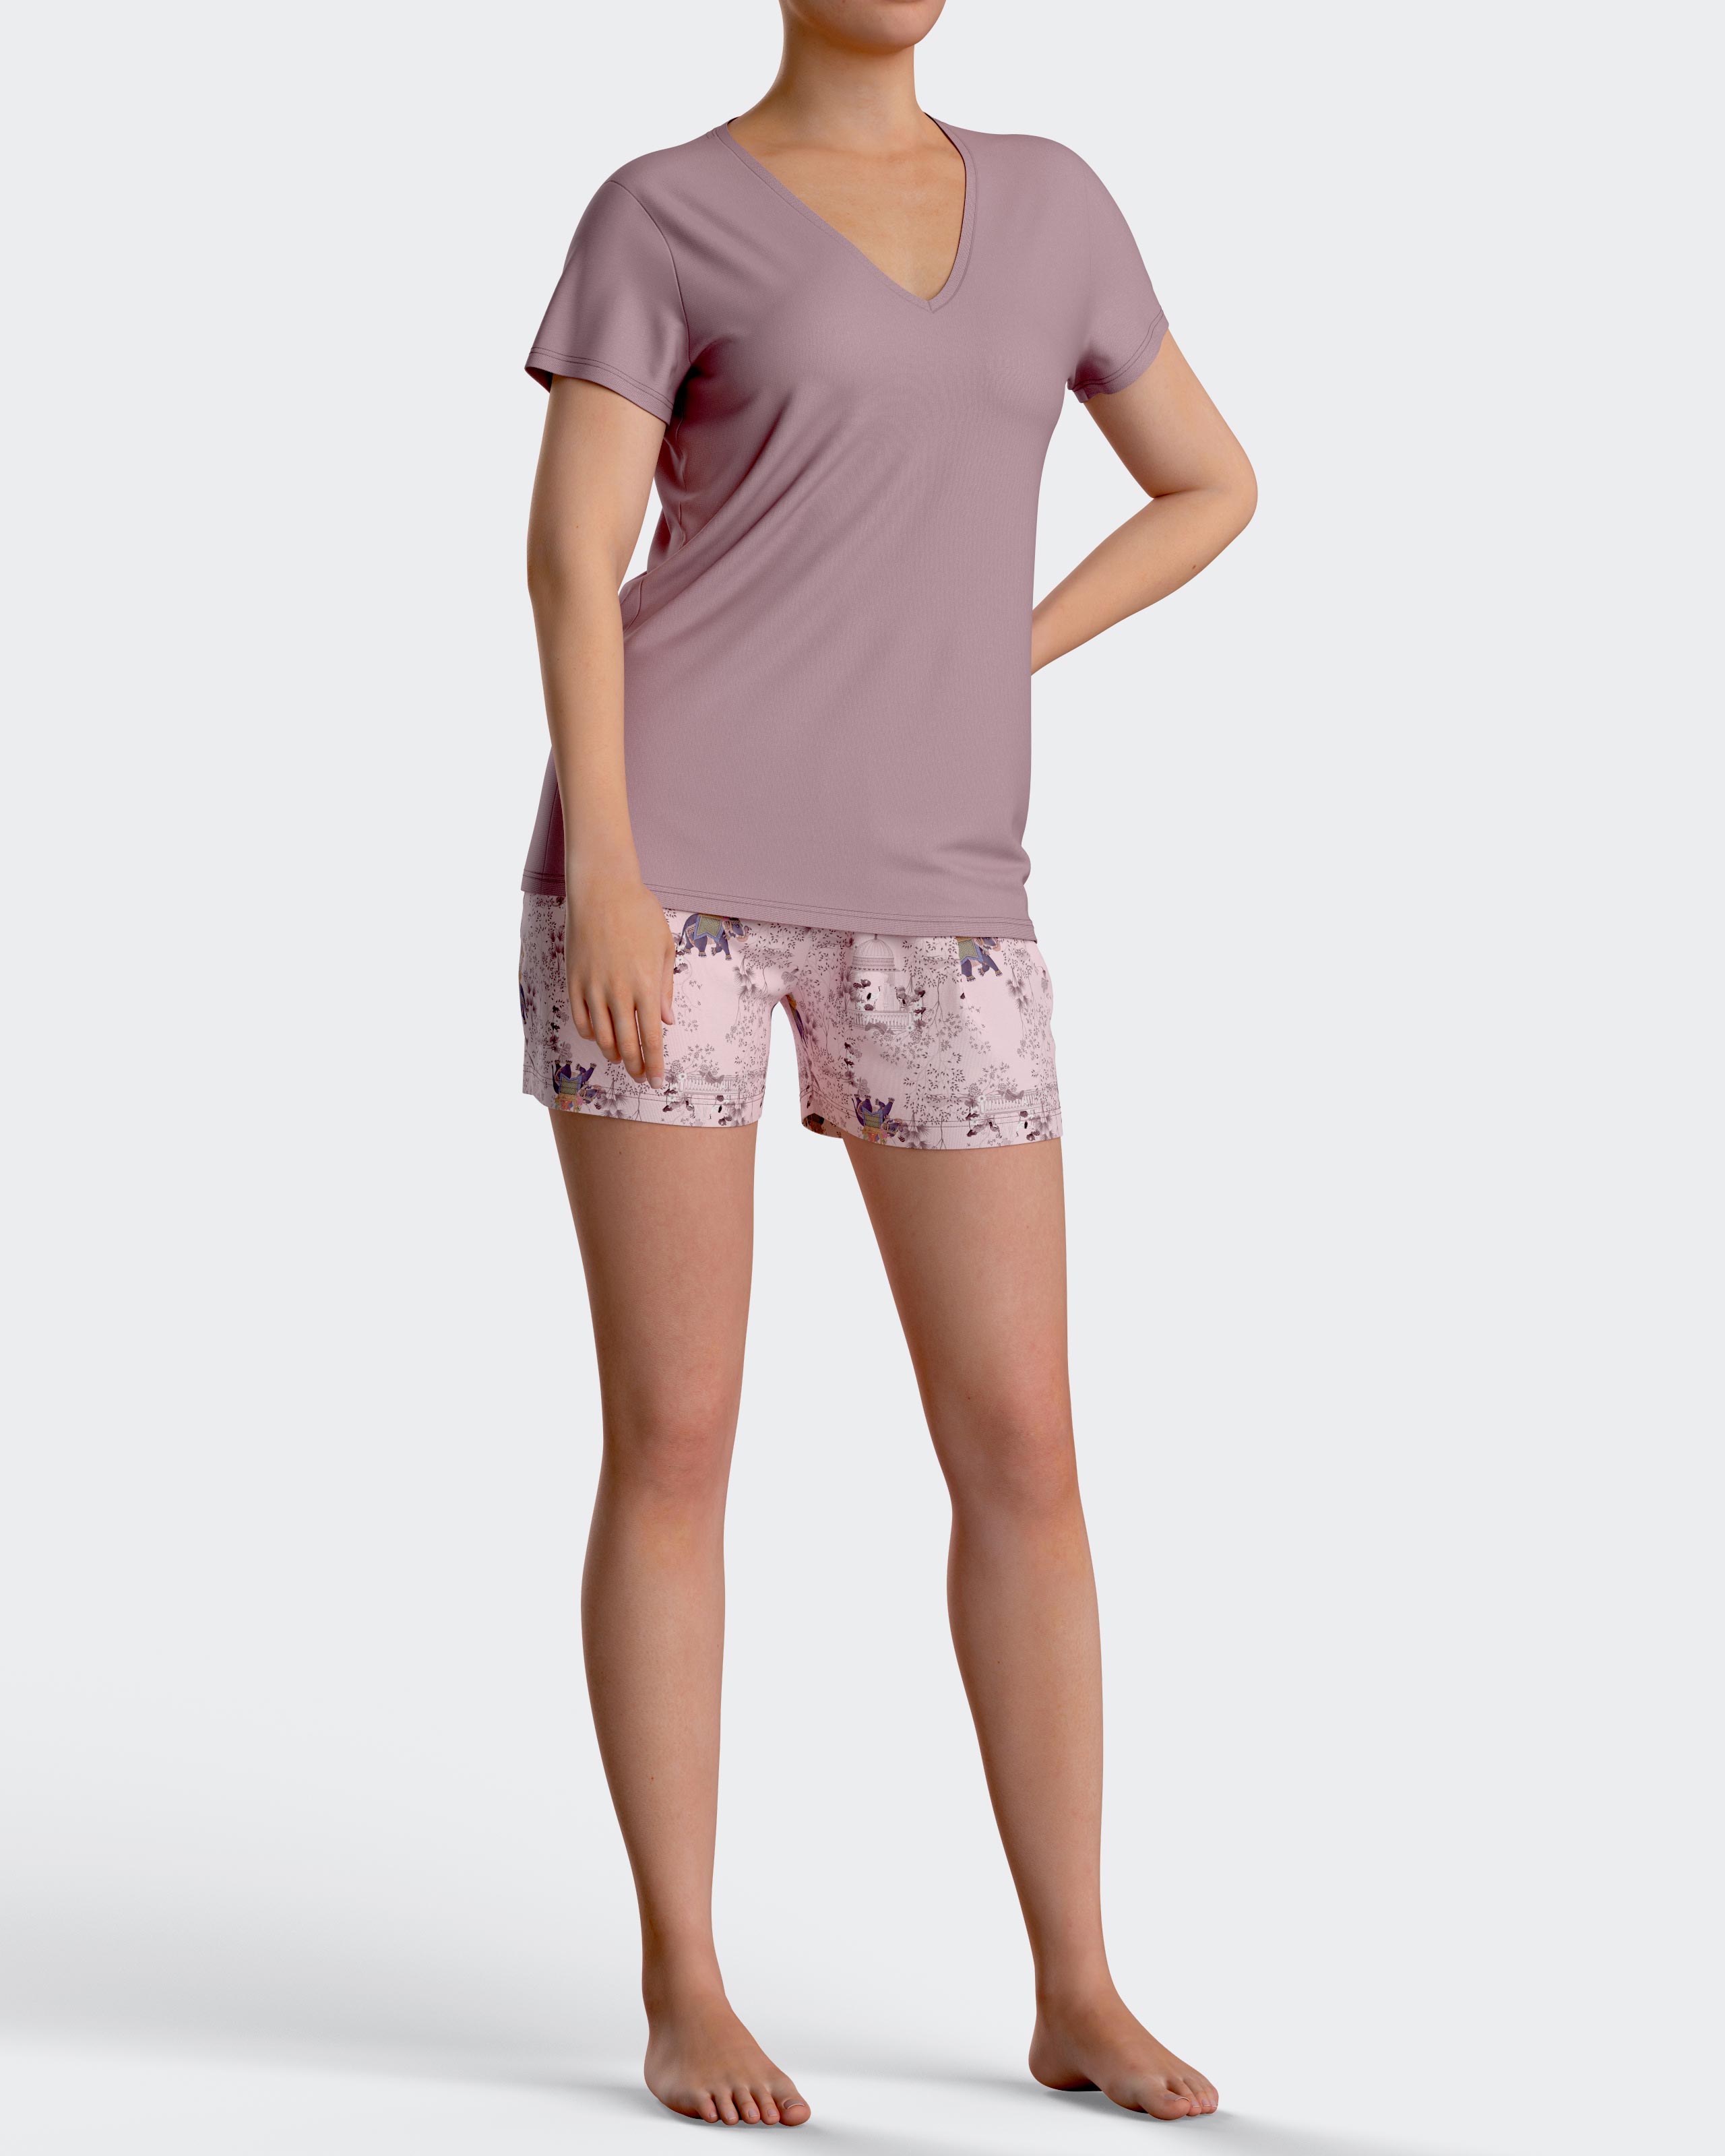 IMPETUS Pijama corto de mujer estampado en algodón Modal ROSA (L)